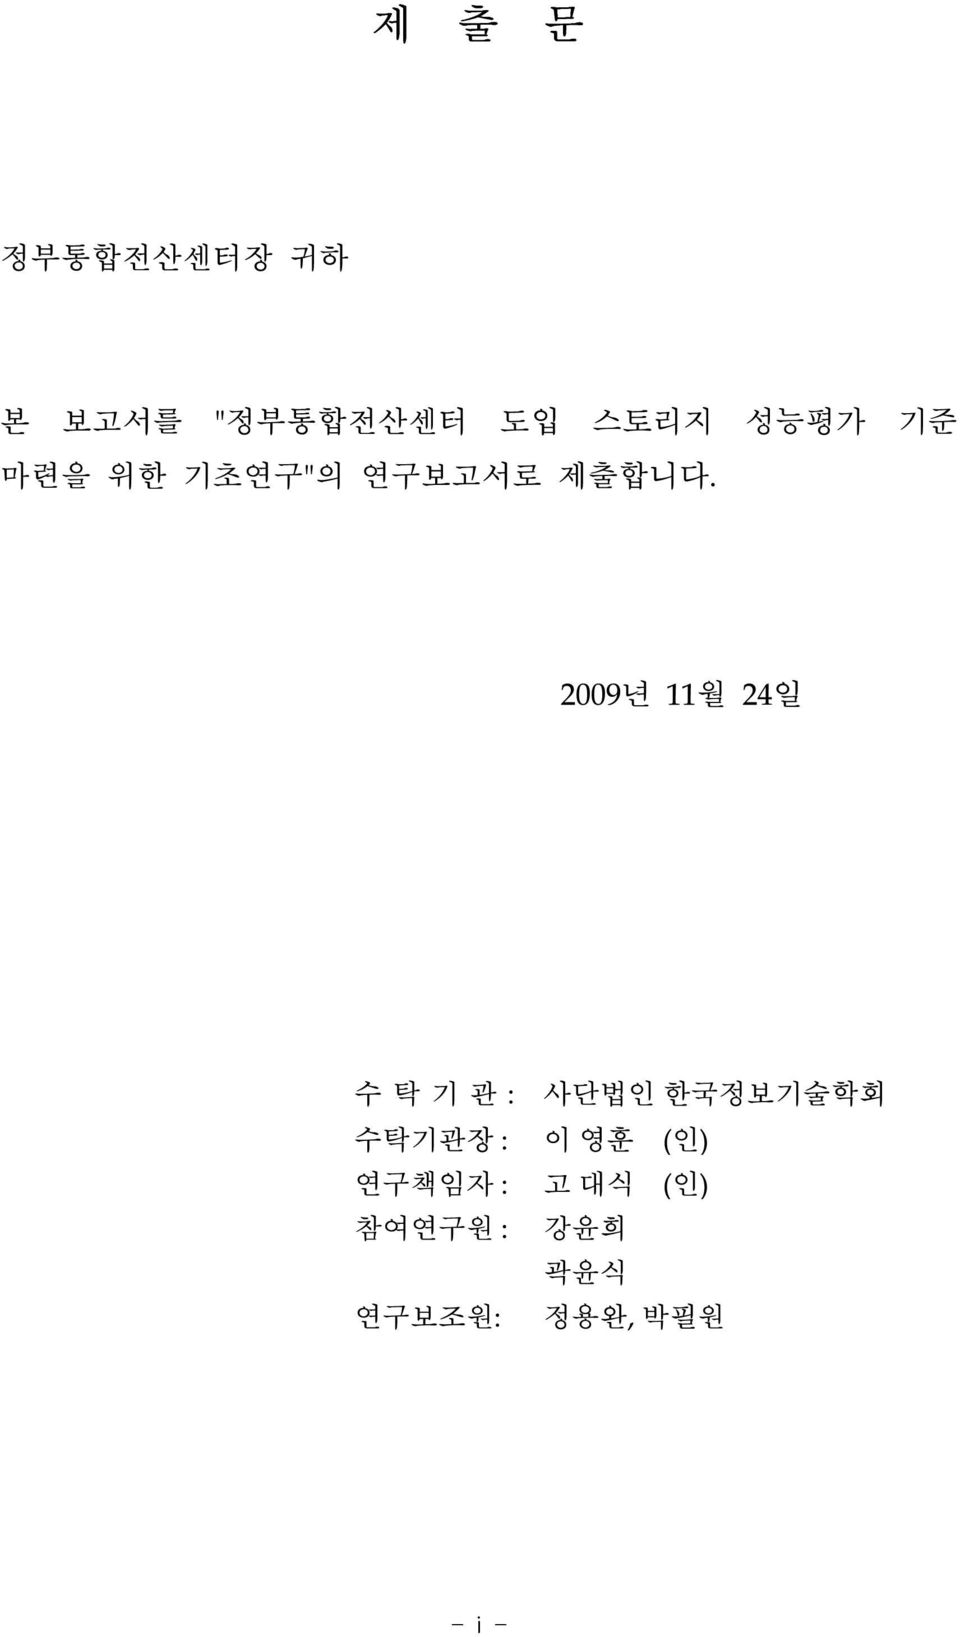 2009년 11월 24일 수 탁 기 관 : 사단법인 한국정보기술학회 수탁기관장 : 이